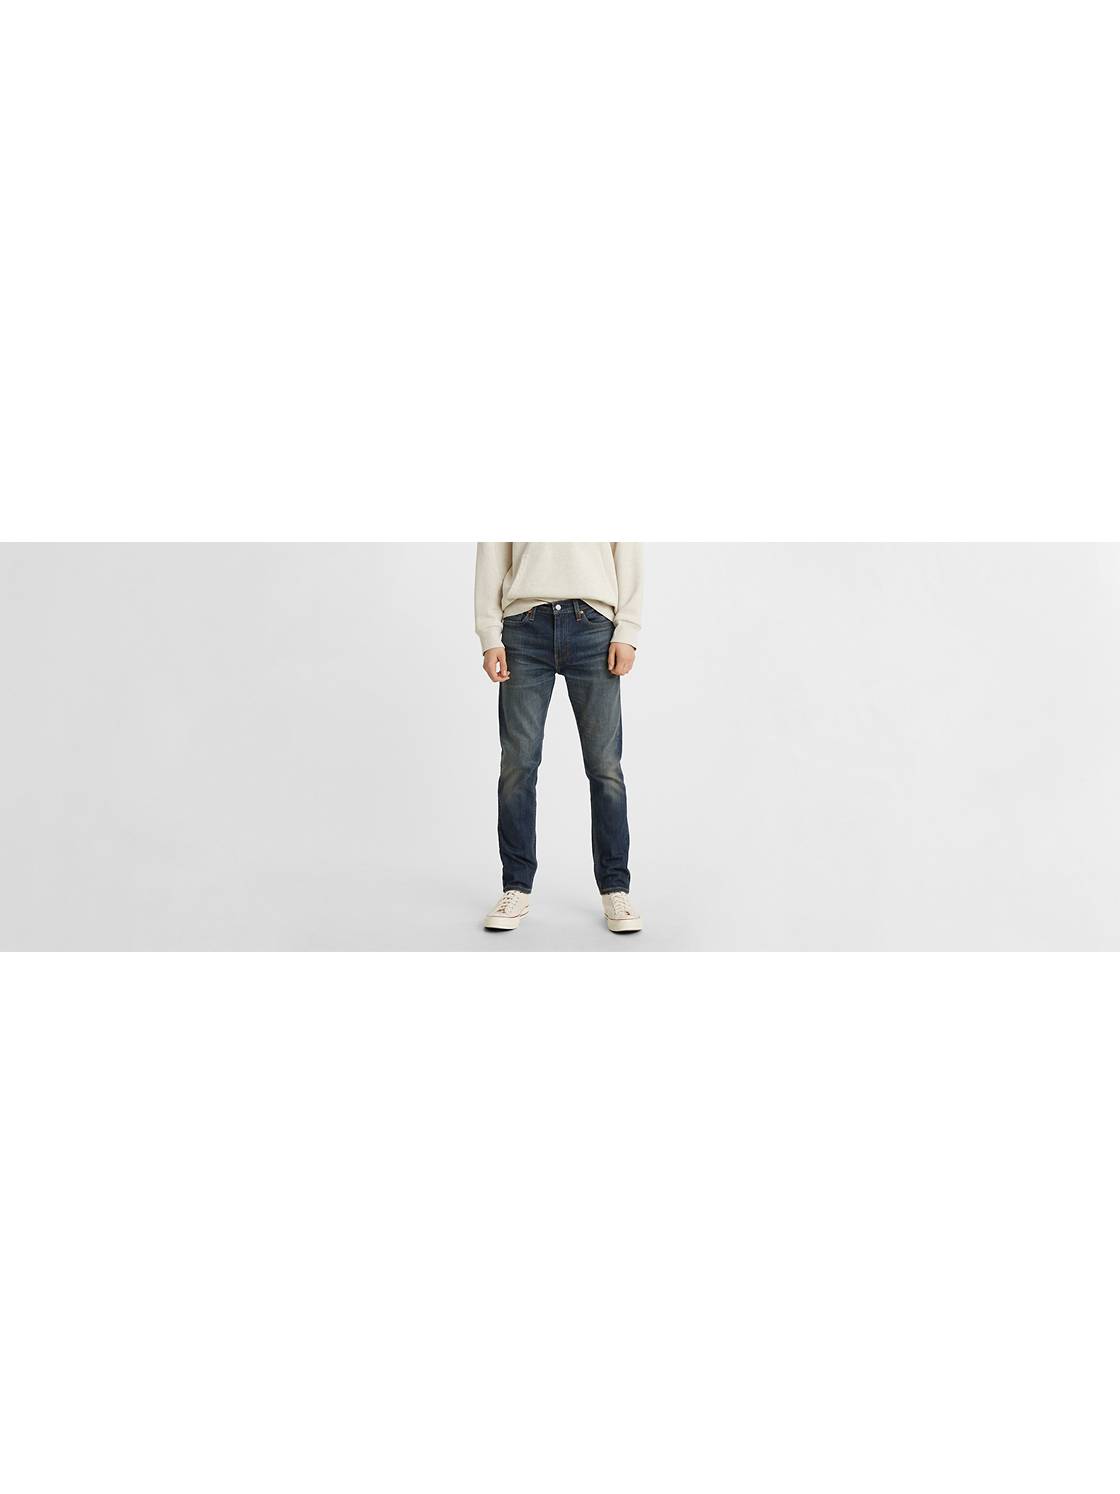 Men's Jeans Sale: Shop Men's Pants Sale Styles & More | Levi's® US